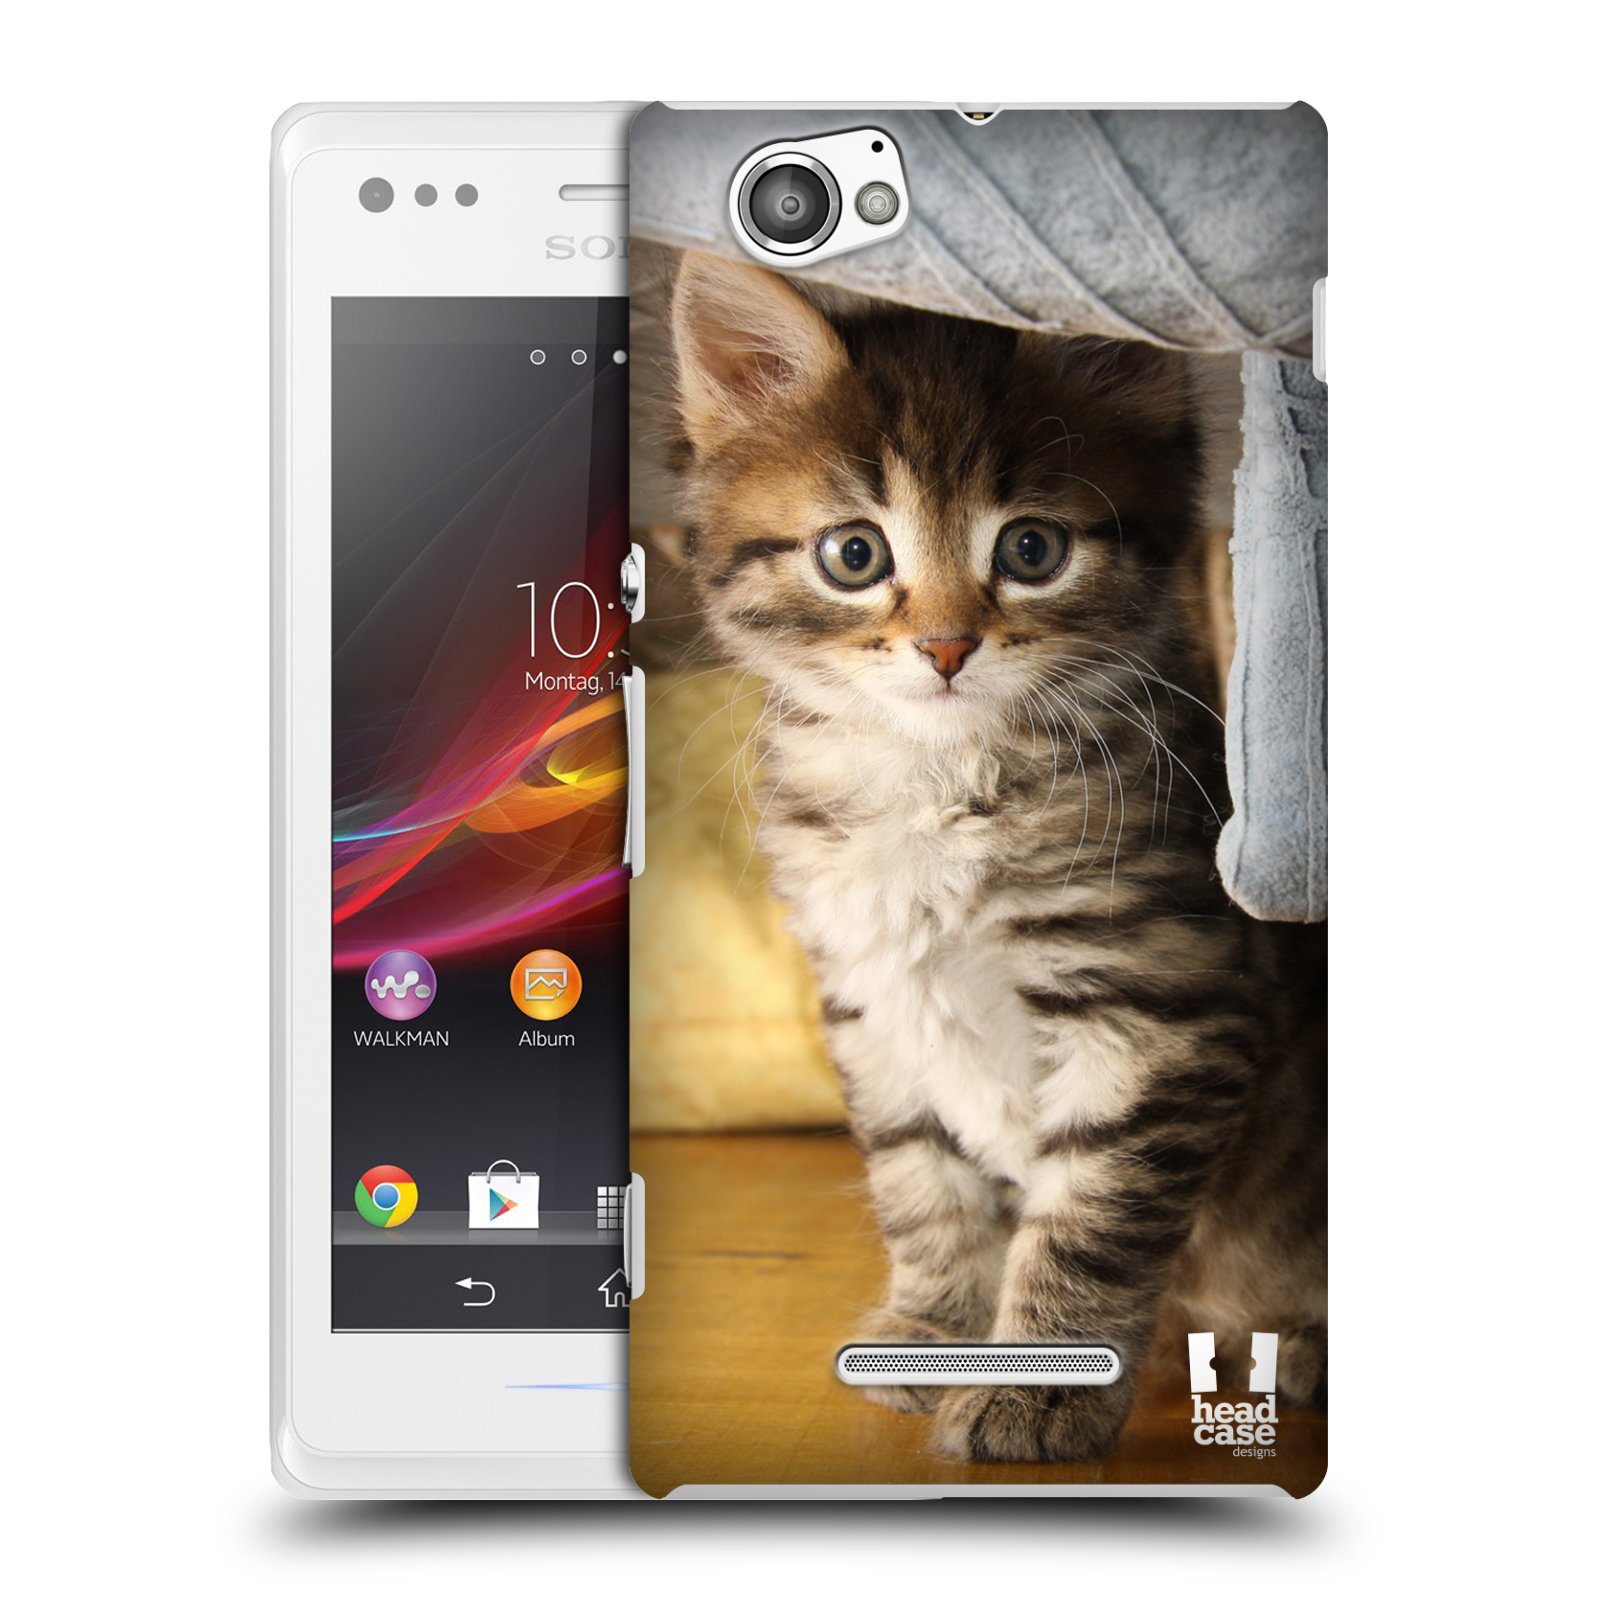 HEAD CASE plastový obal na mobil Sony Xperia M vzor Kočičky koťata foto mourek